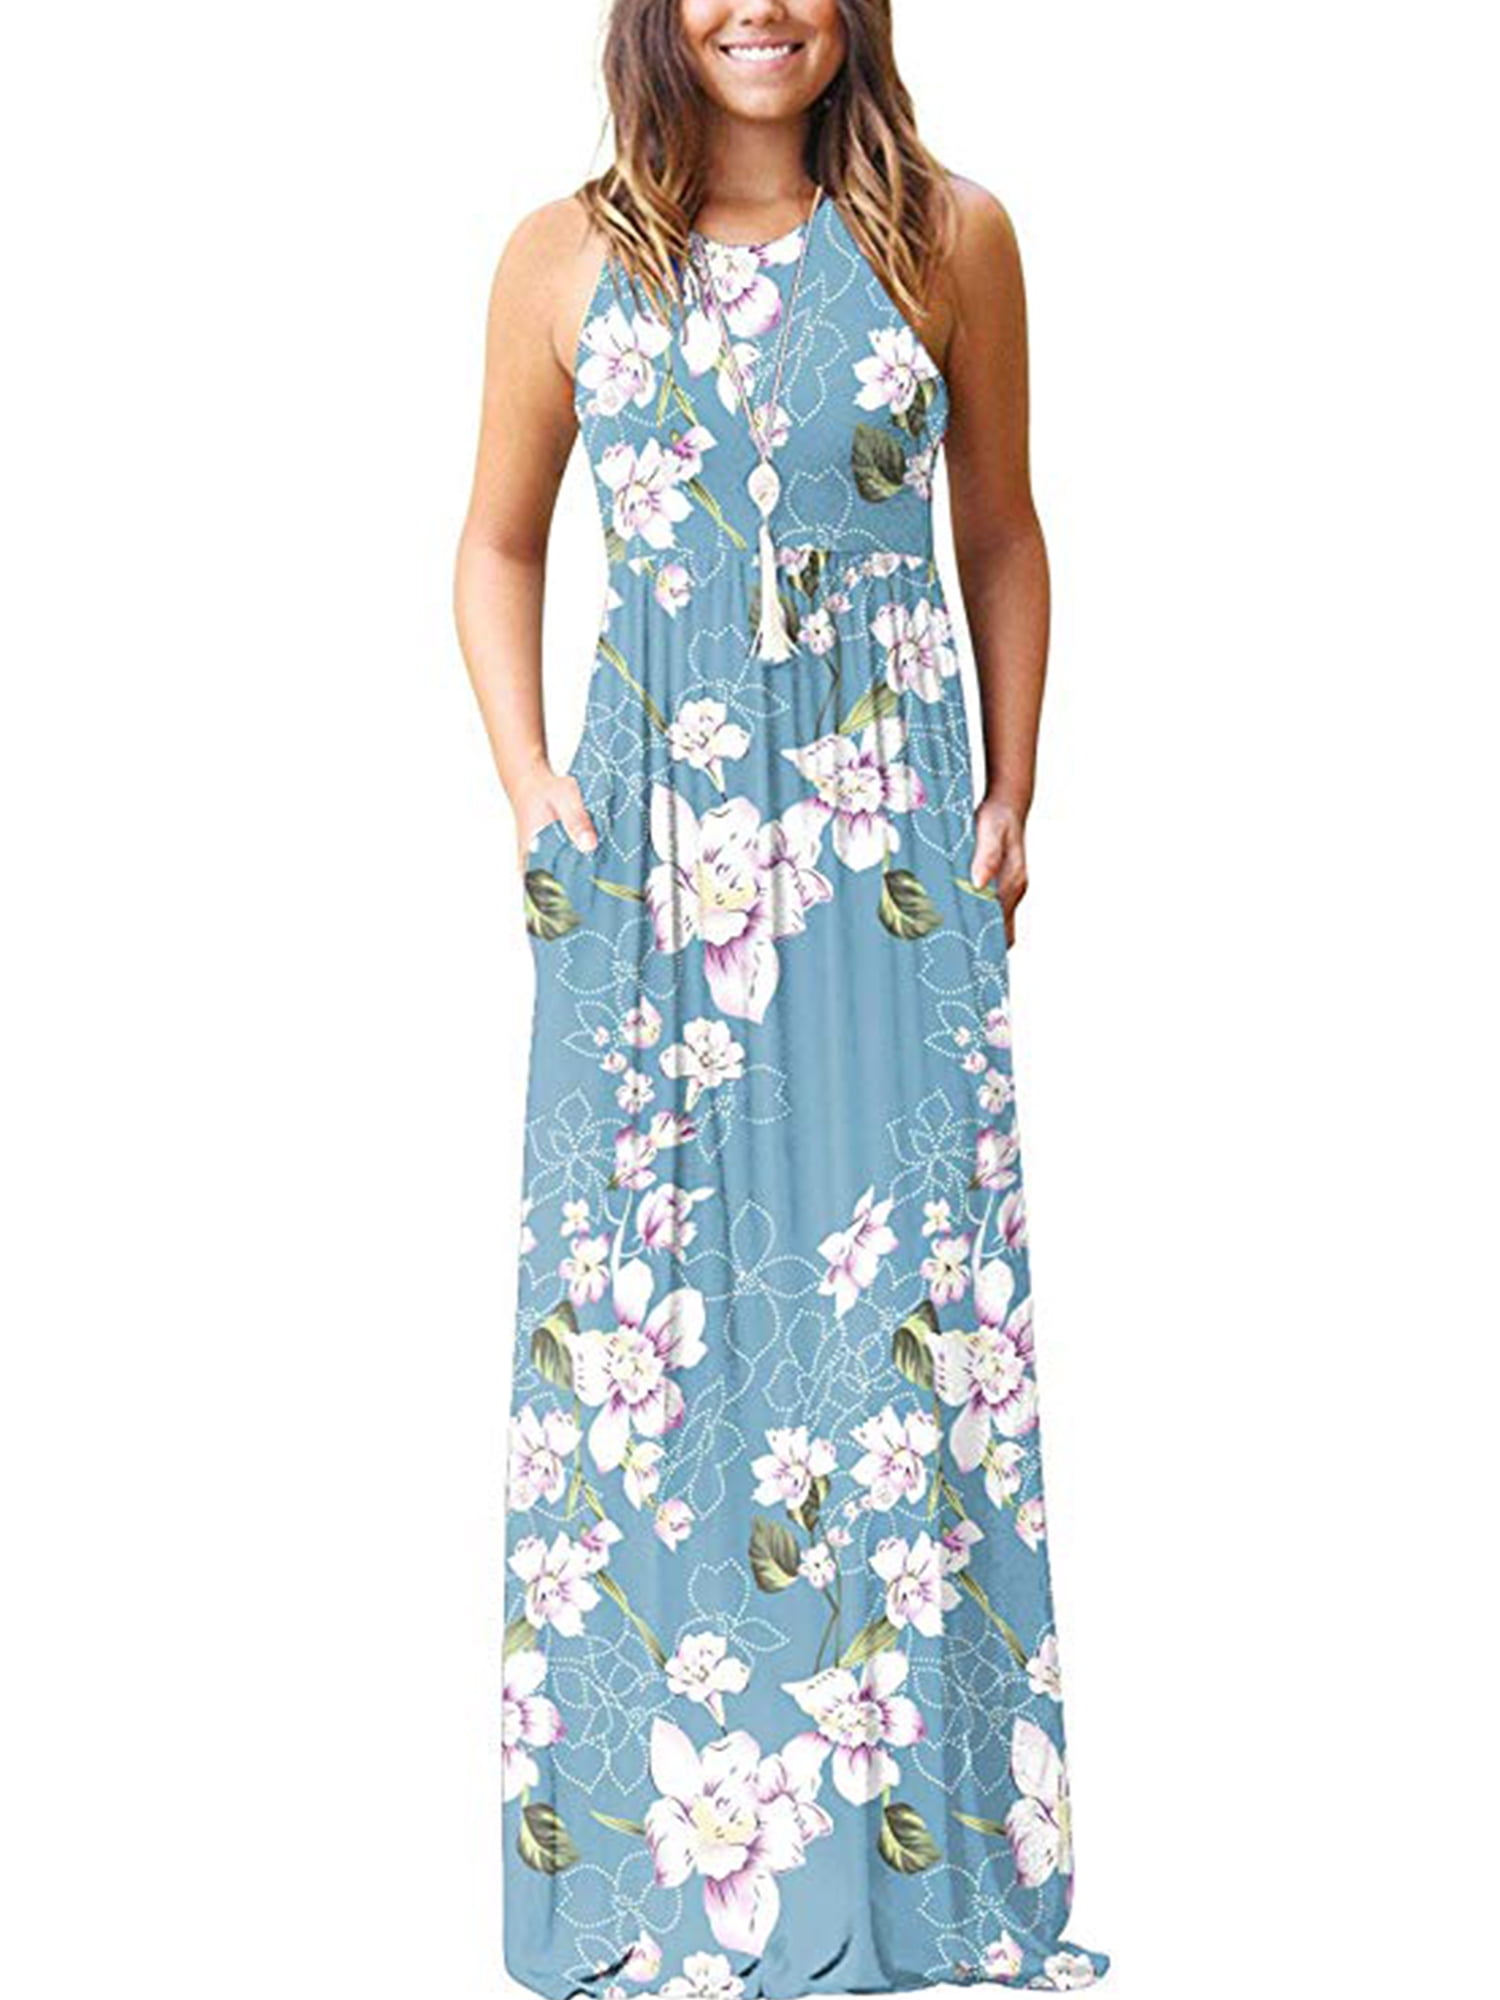 100% Cotton Floral Striped Maxi Dress Scoop Neck Sleeveless Sundress Summer S-XL 